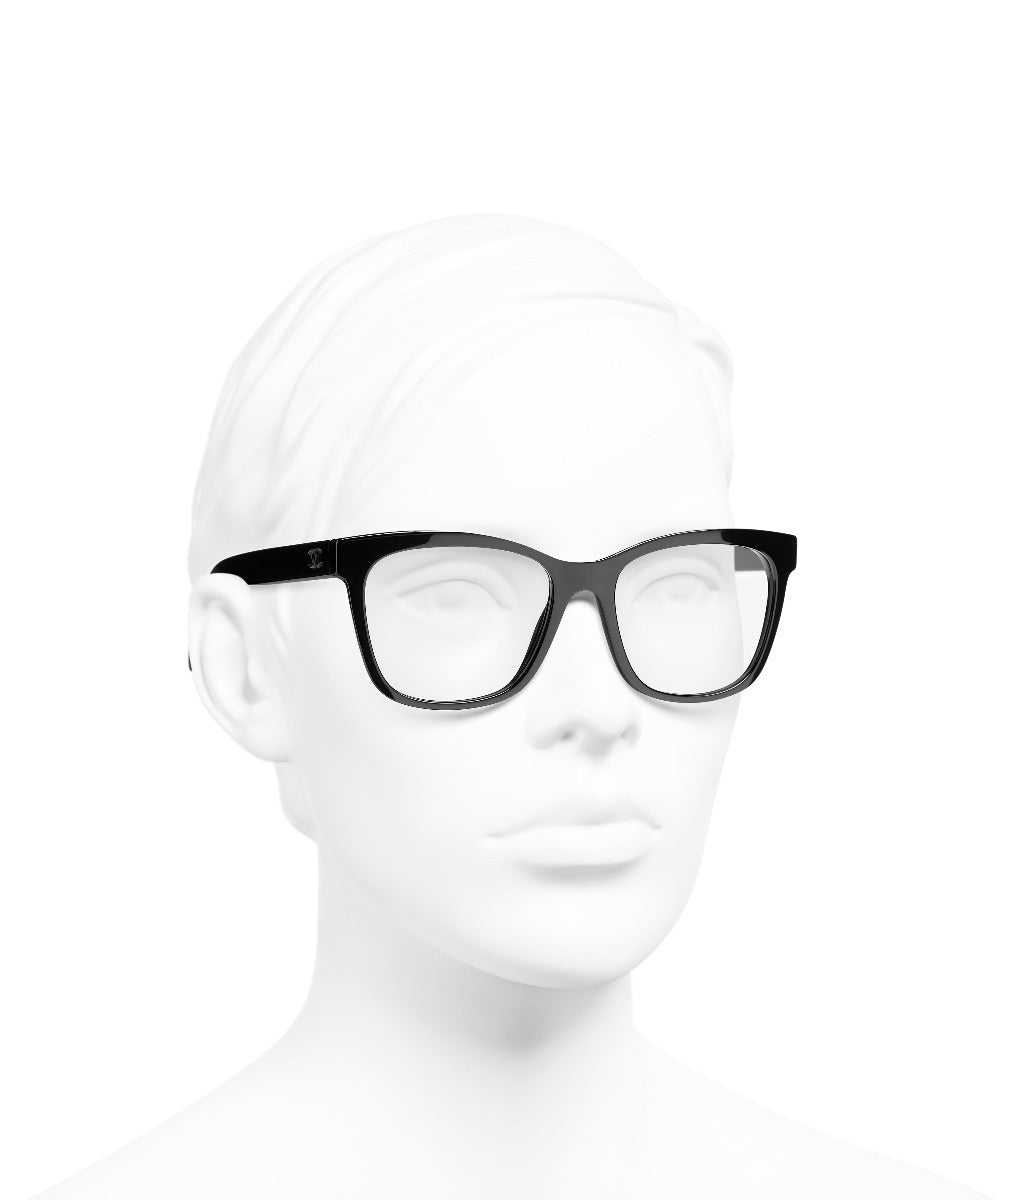 Occhiali da vista: Occhiali rettangolari da vista, acetato — Moda